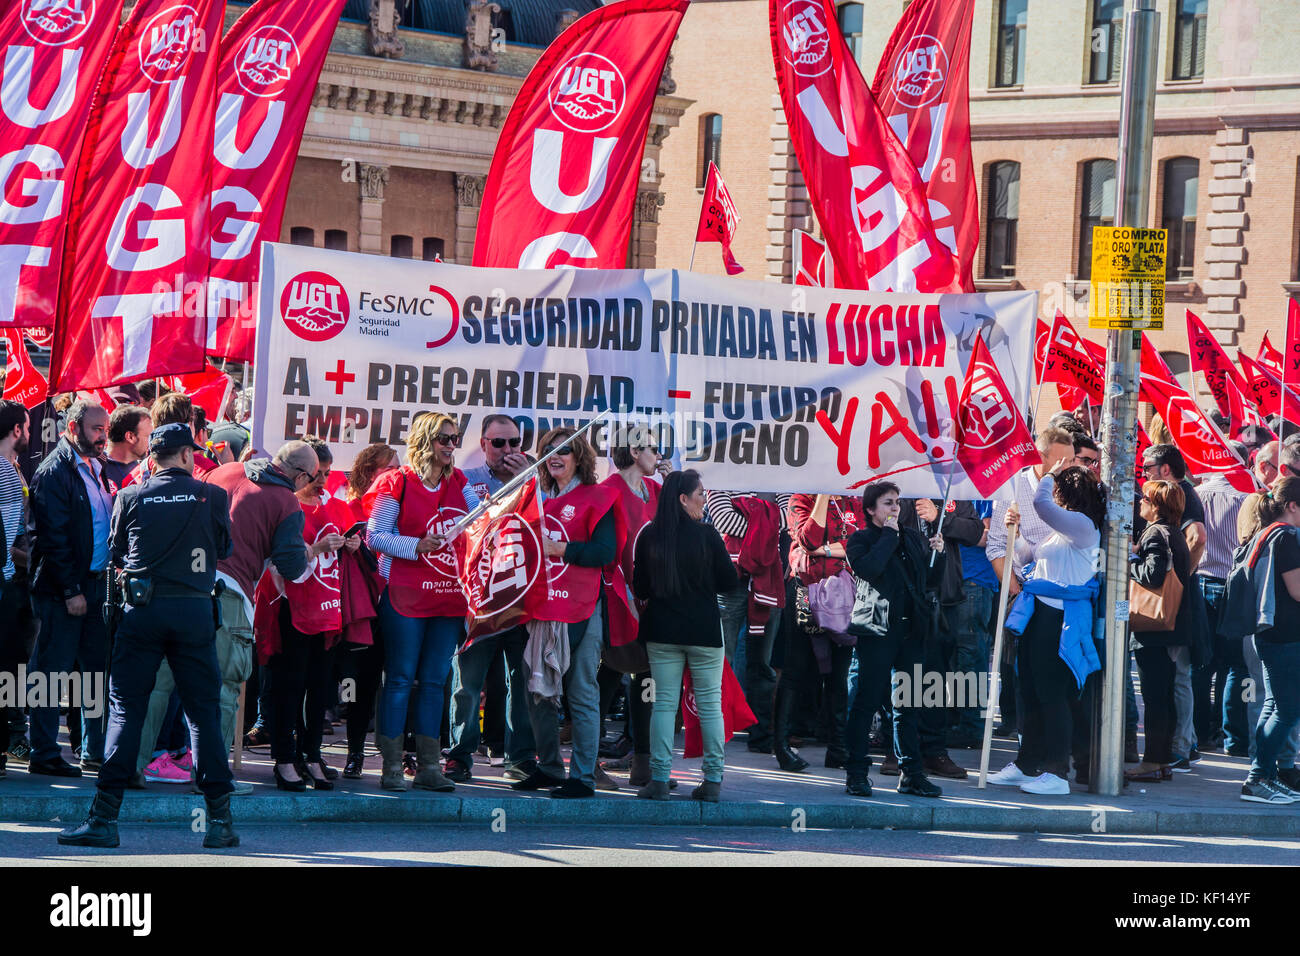 UGT "Unione generale dei lavoratori'marco in favore dei diritti di sicurezza privata dei lavoratori Credito: Alberto Ramírez Sibaja/Alamy Live News Foto Stock